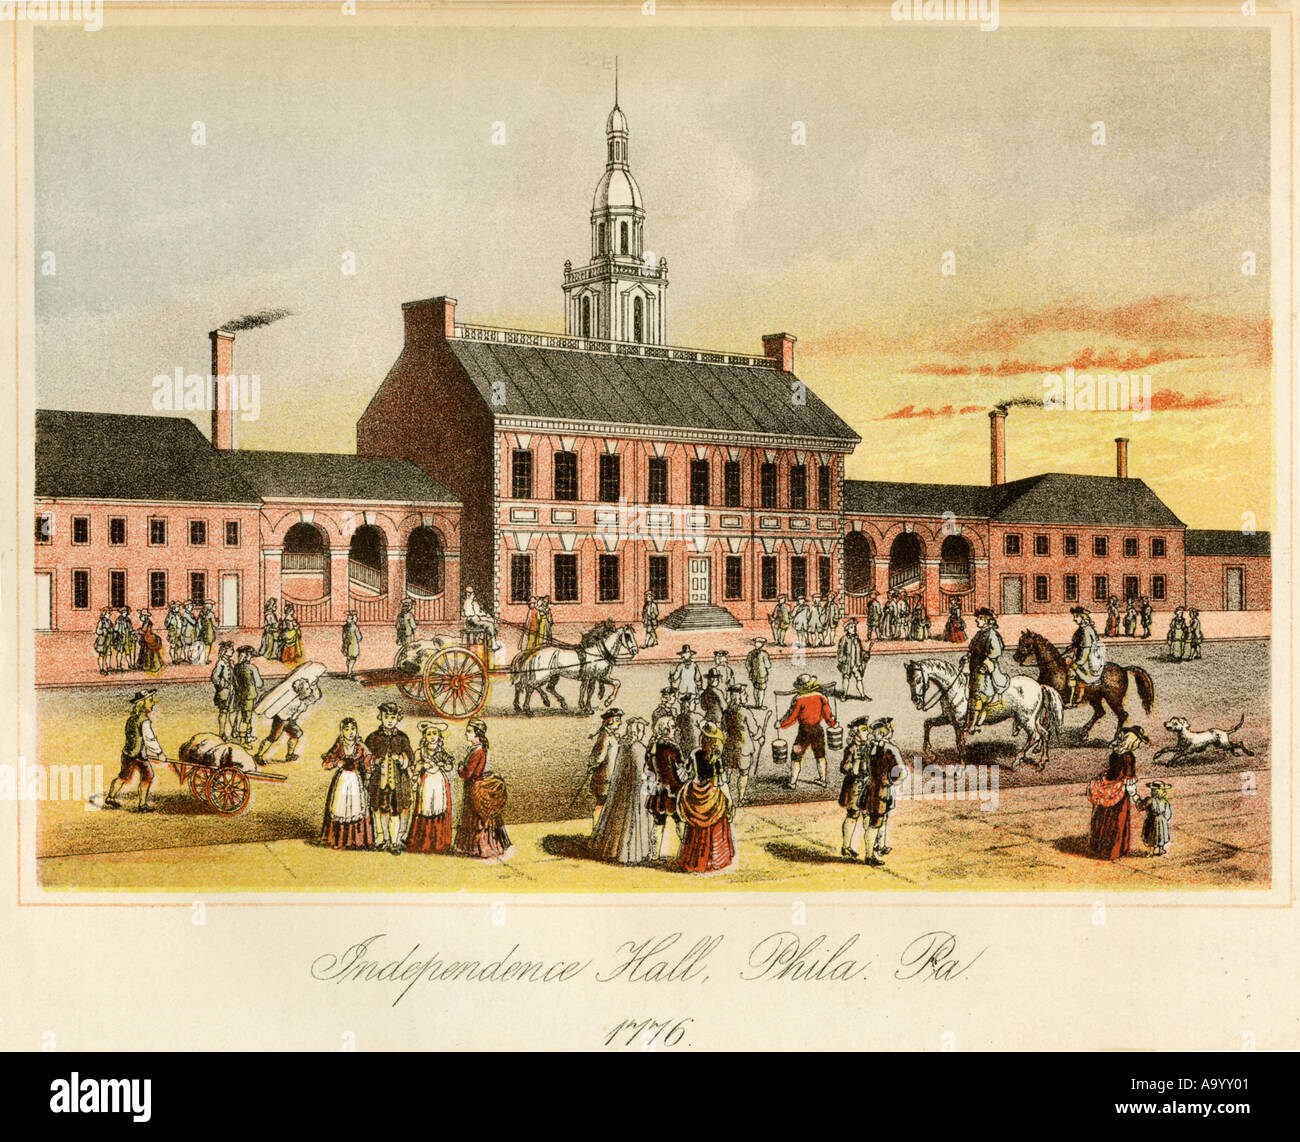 L'Independence Hall à Philadelphie alors que le Congrès continental s'est réuni pour rédiger la Déclaration d'indépendance de 1776. Lithographie couleur Banque D'Images